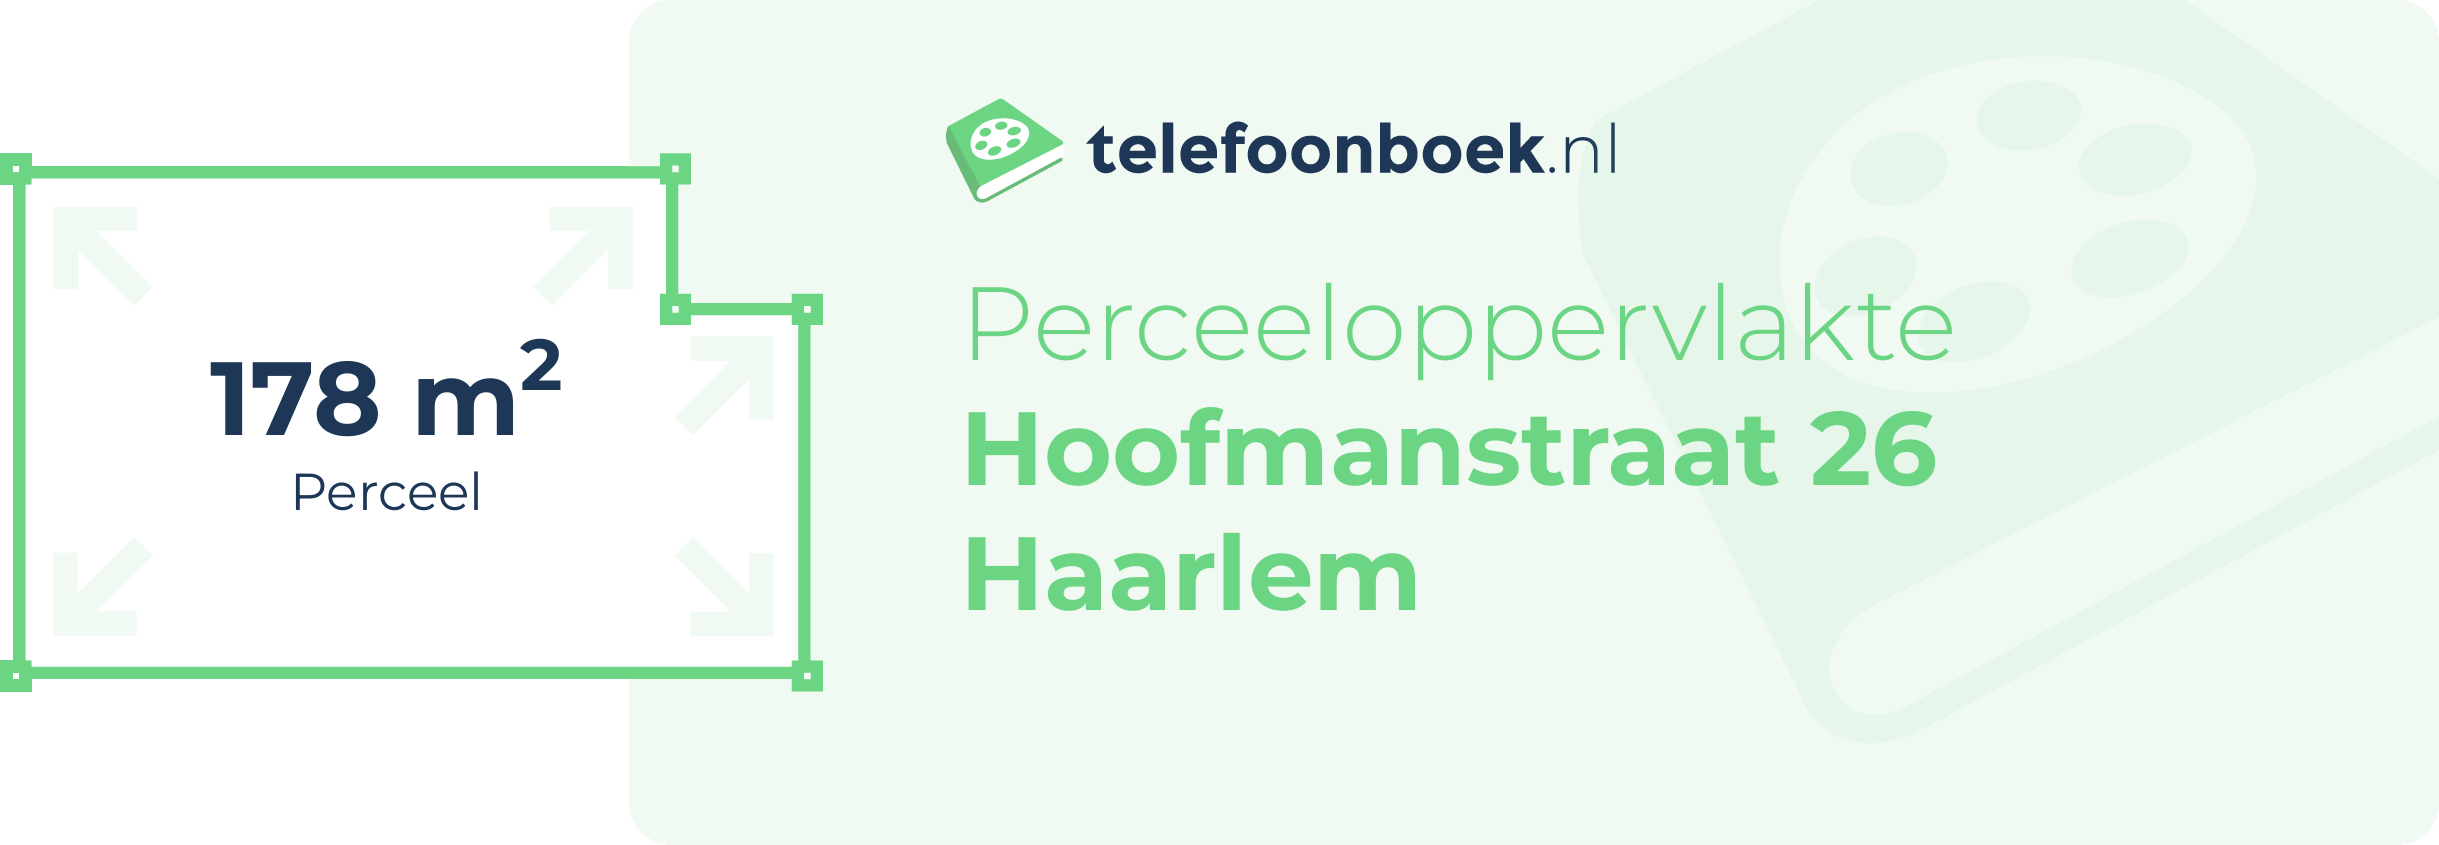 Perceeloppervlakte Hoofmanstraat 26 Haarlem